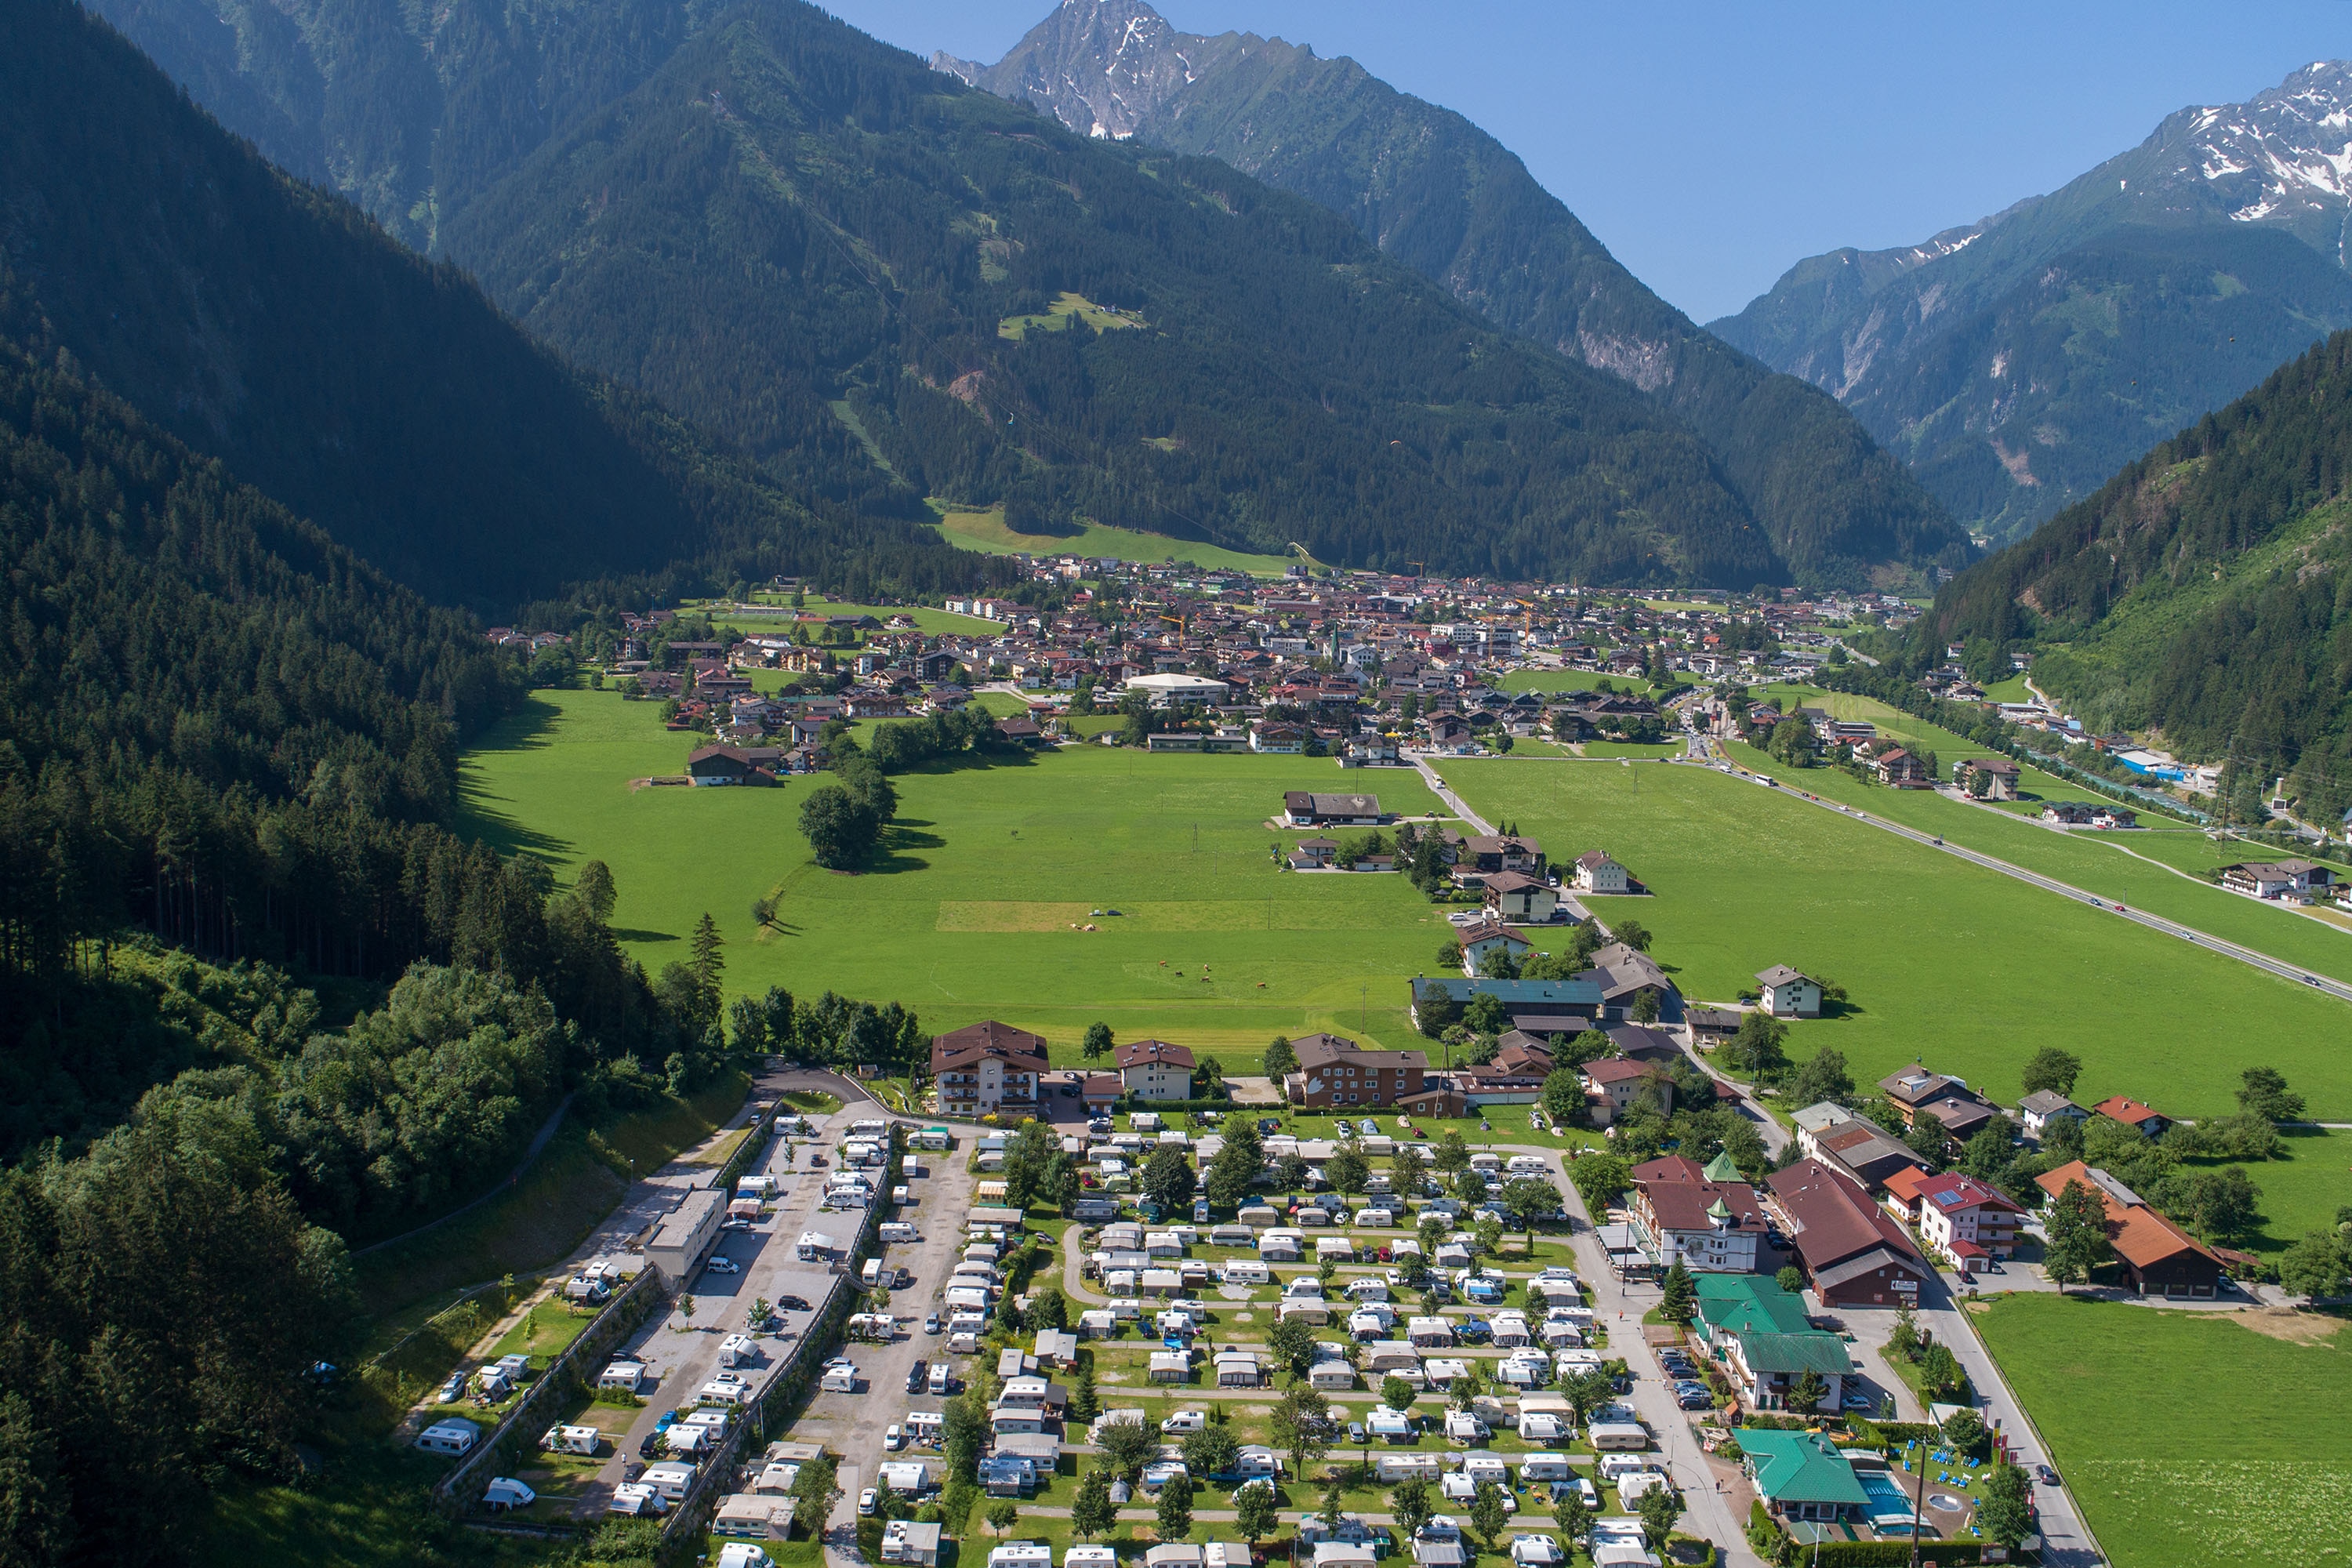 Camping Alpenparadies Mayrhofen